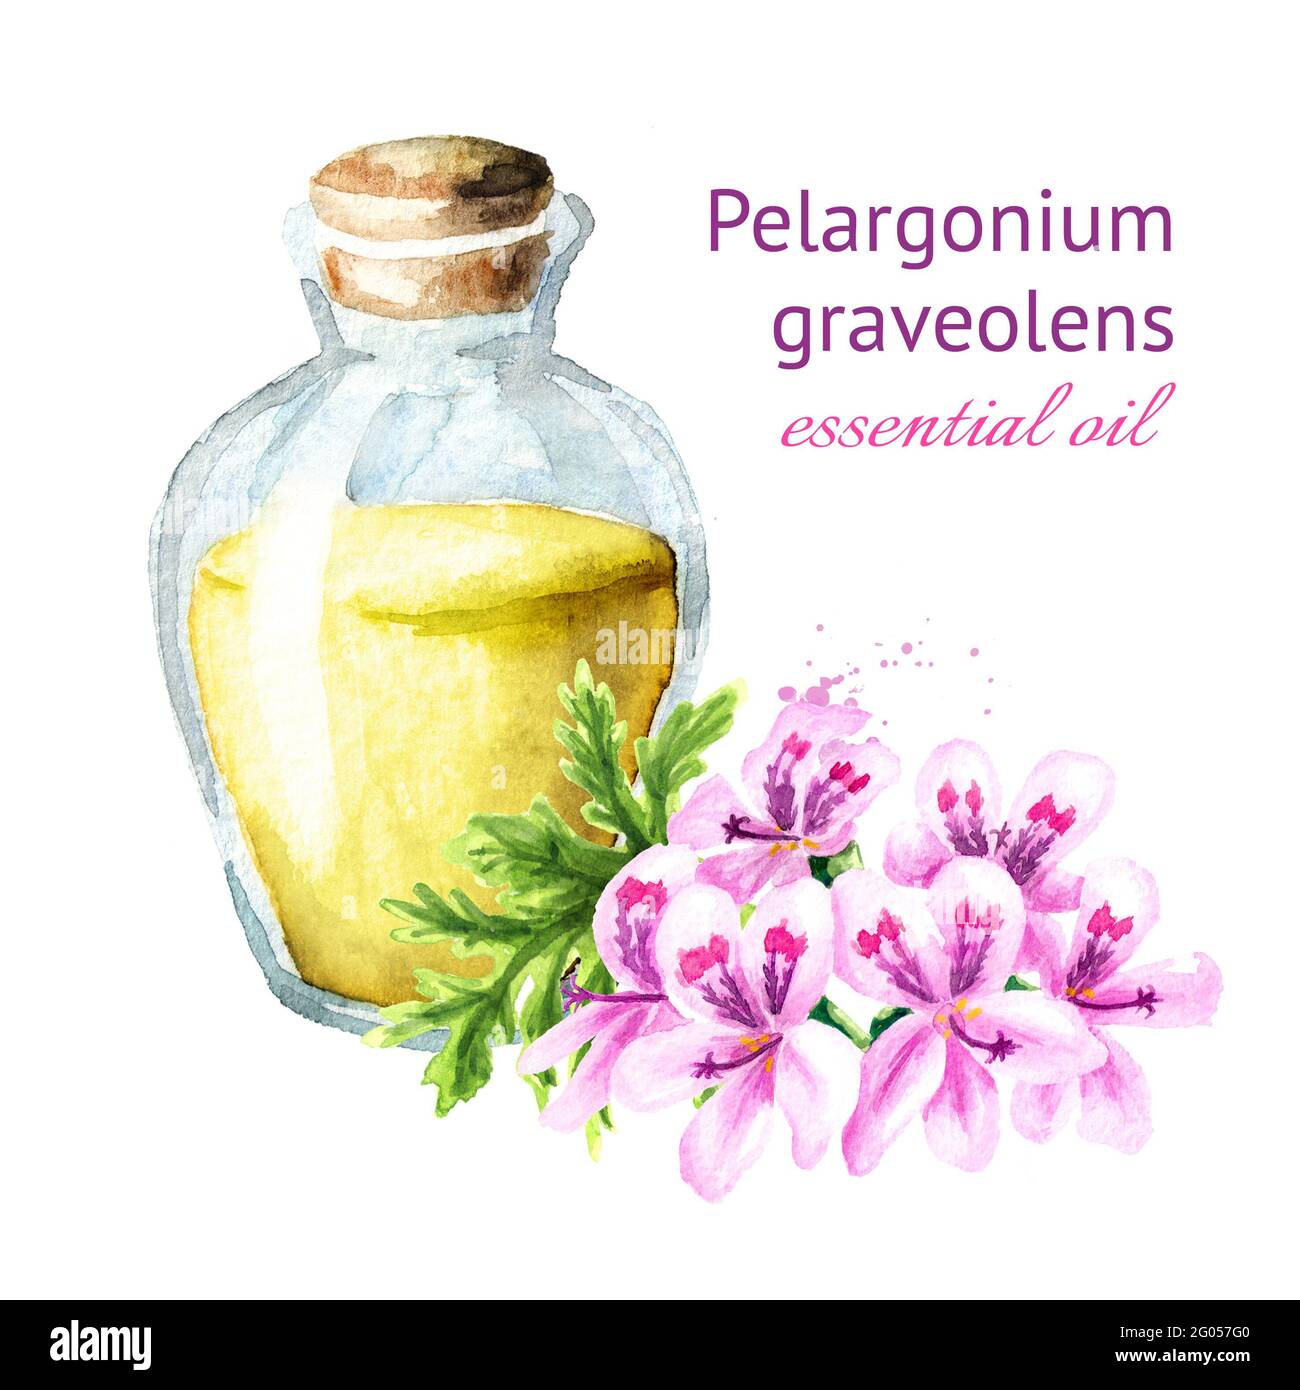 Pelargonium graveolens or Pelargonium x asperum, geranium flower and essential oil. Watercolor hand drawn illustration, isolated on white background Stock Photo